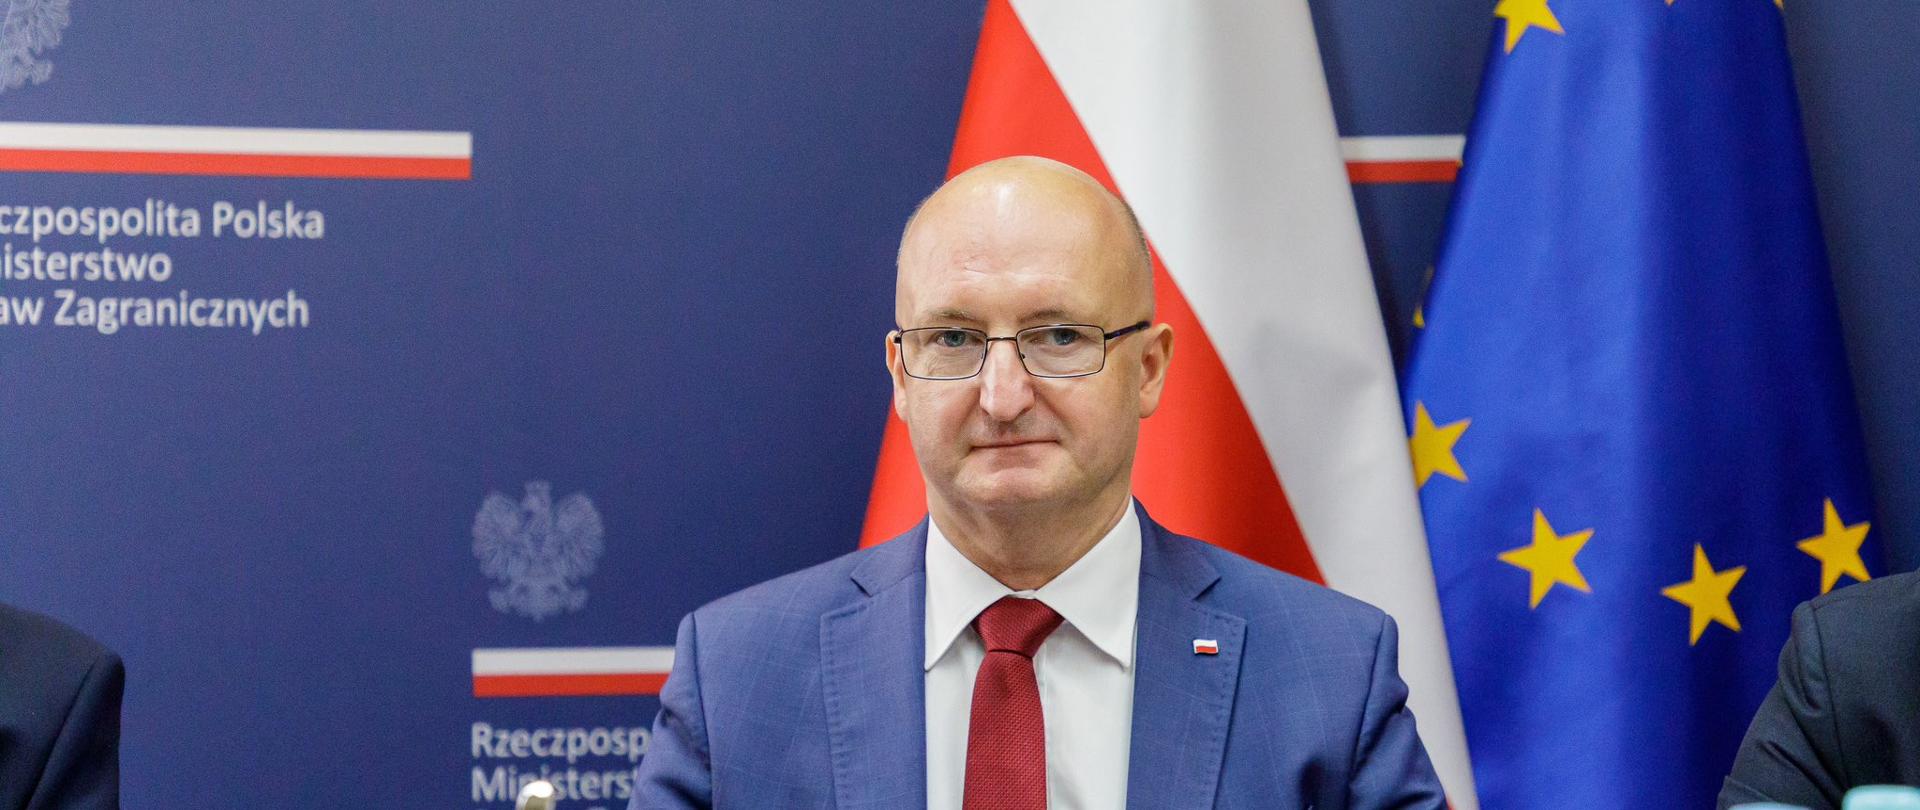 Sekretarz Stanu
Piotr Wawrzyk
